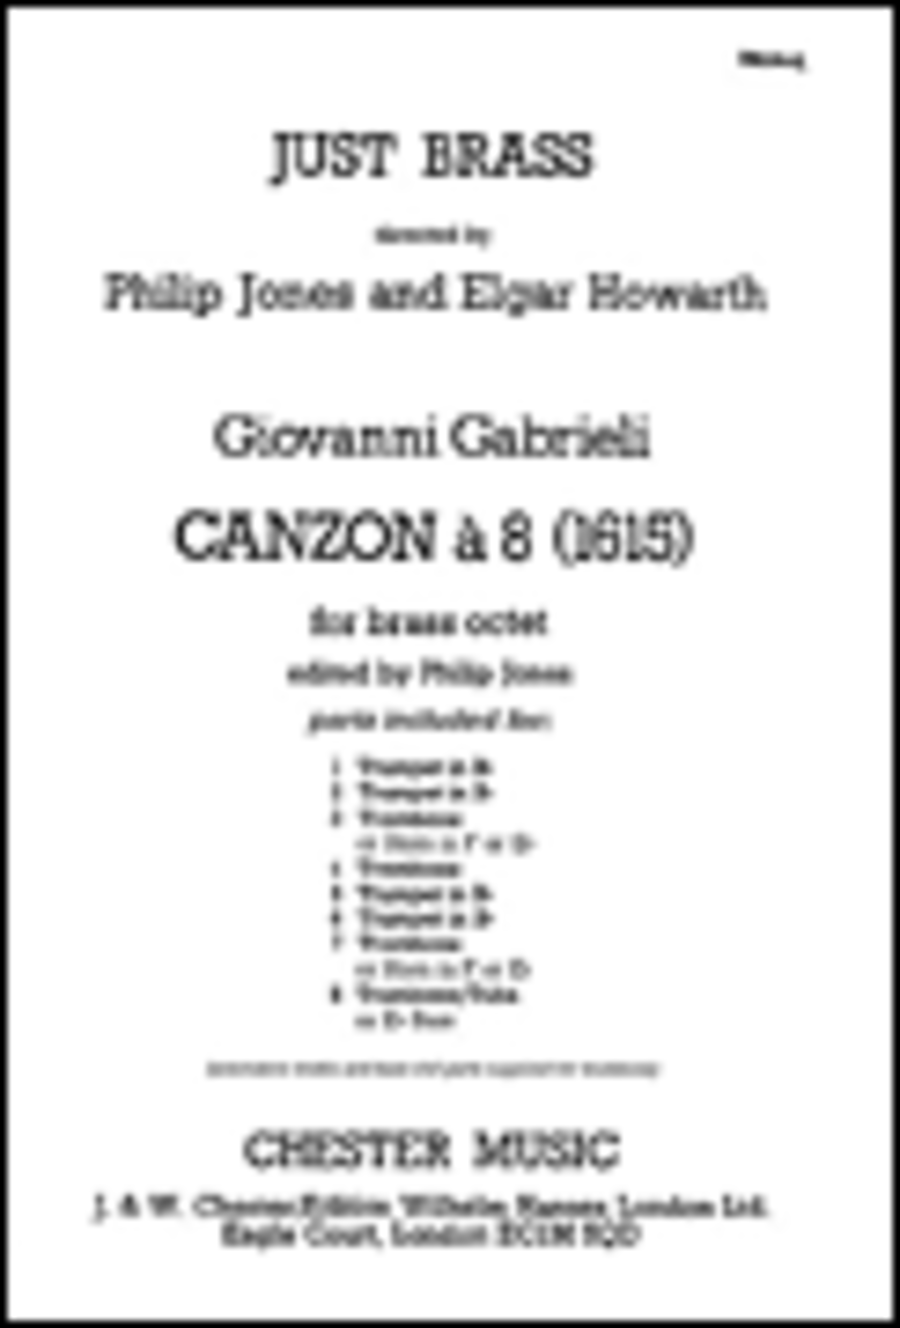 Giovanni Gabrieli: Canzon - Brass Octet (Just Brass No.44)